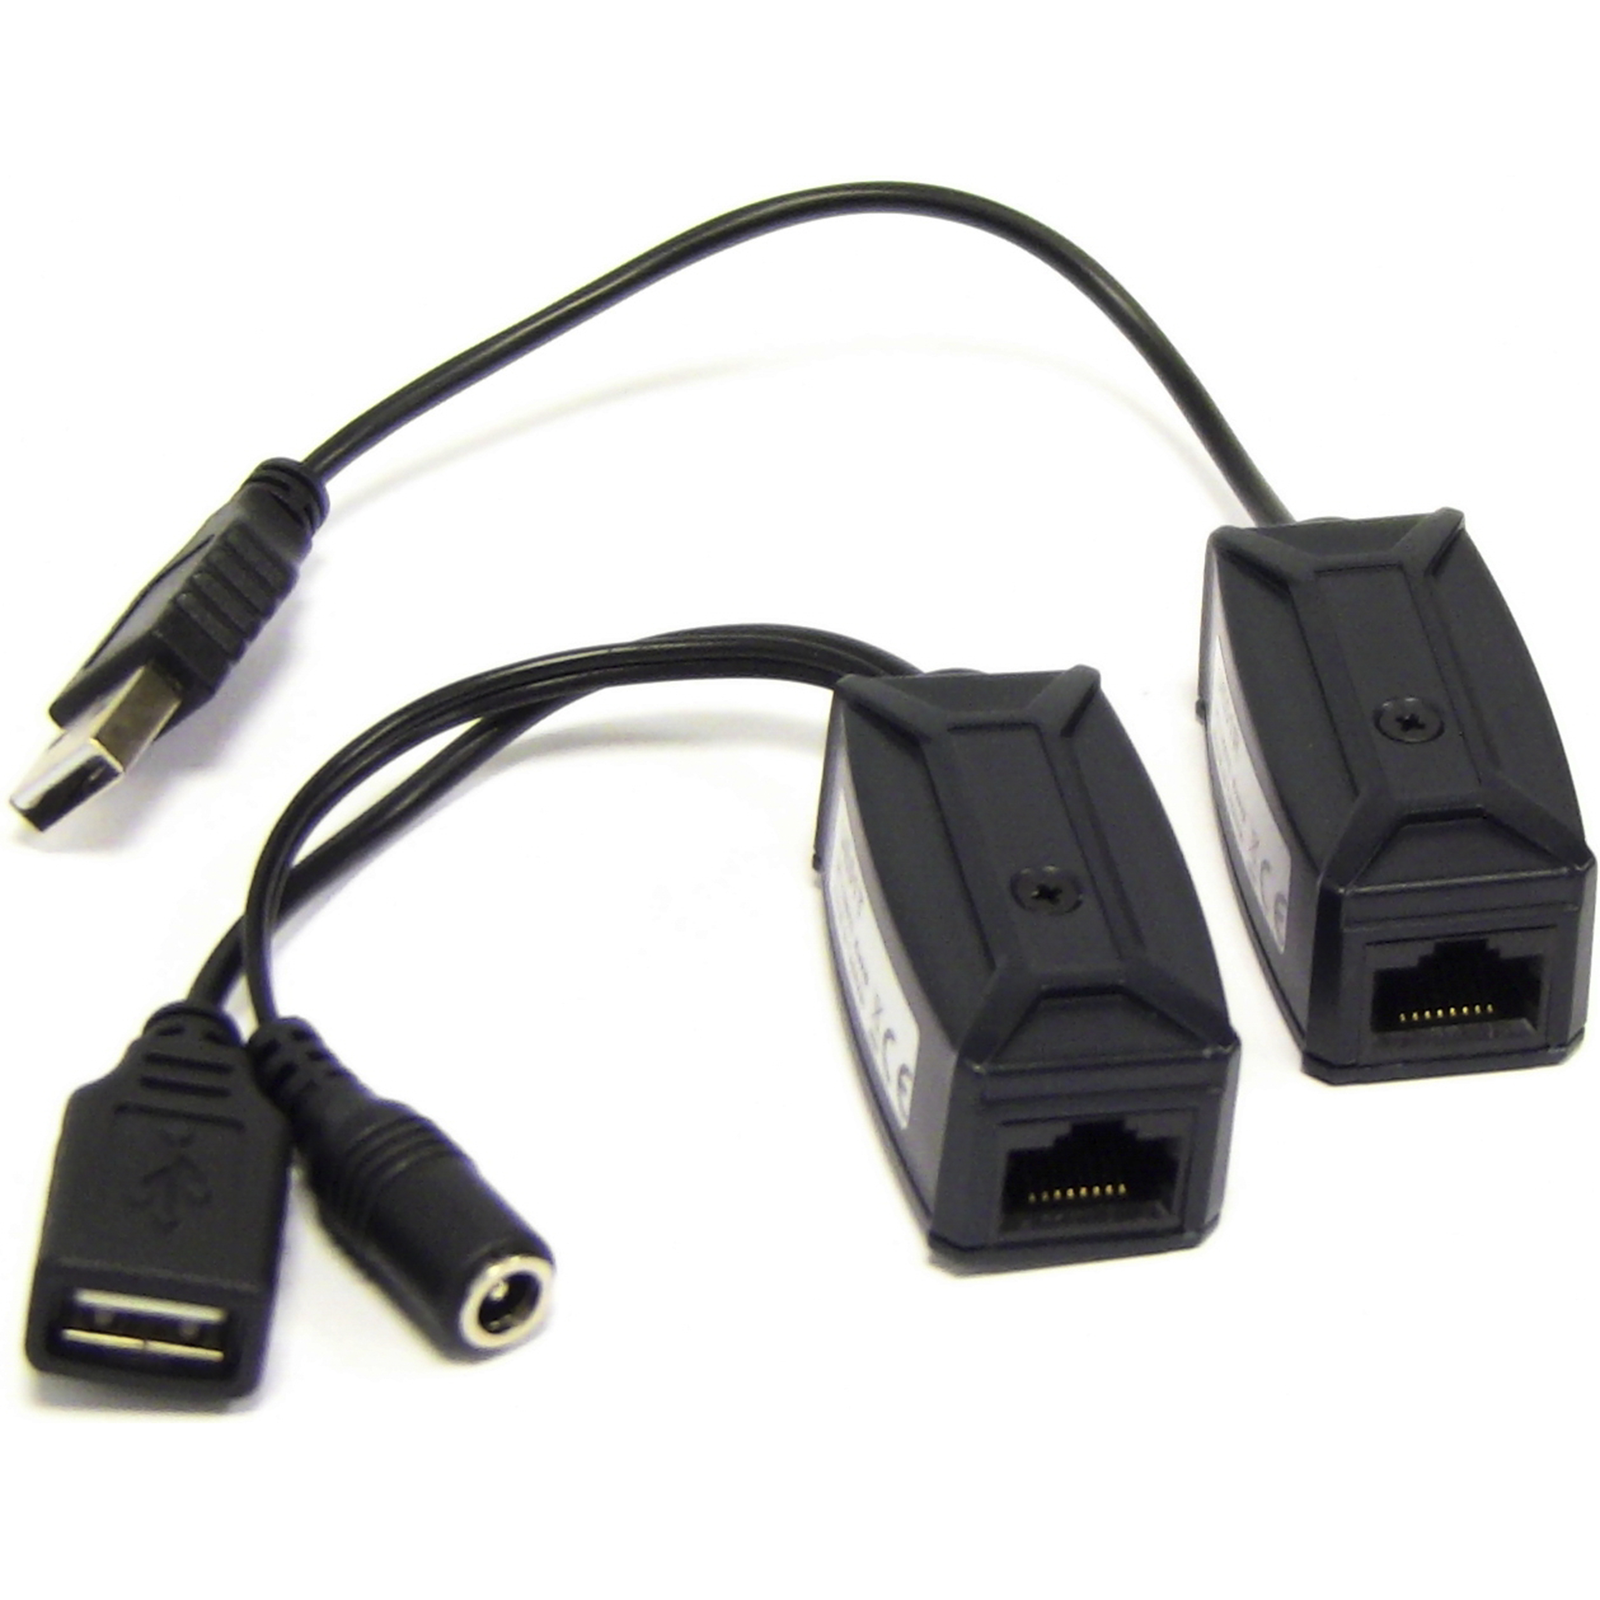 Cable extensor USB 2.0 por cable de red UTP de 50m - Cablematic